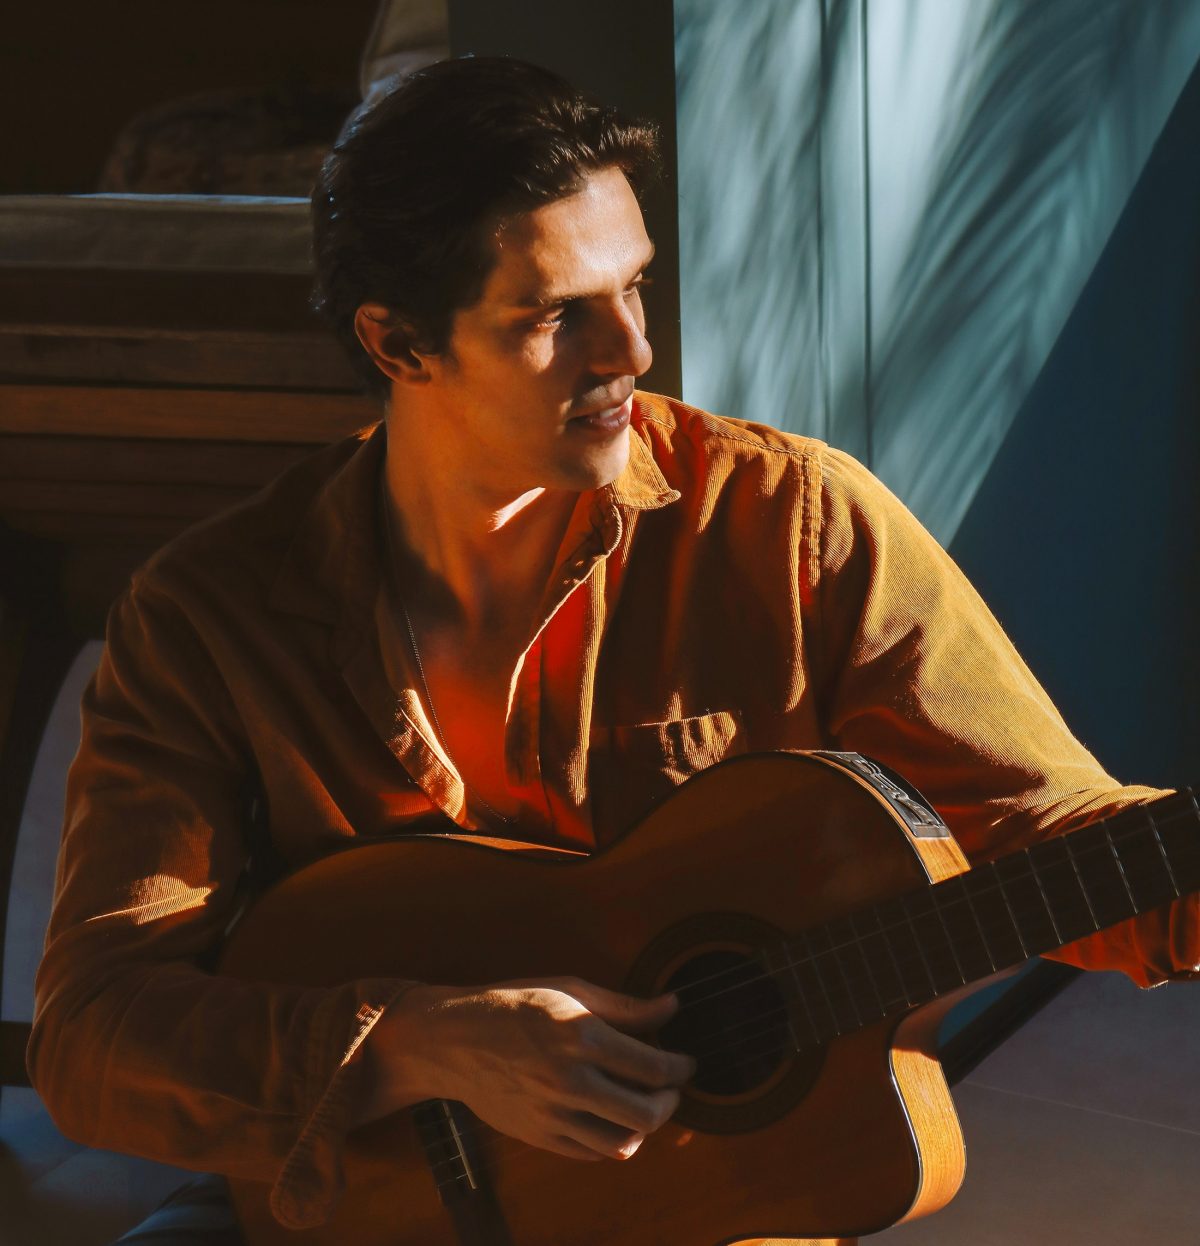 Rafael Infante aparece sentado tocando um violão.